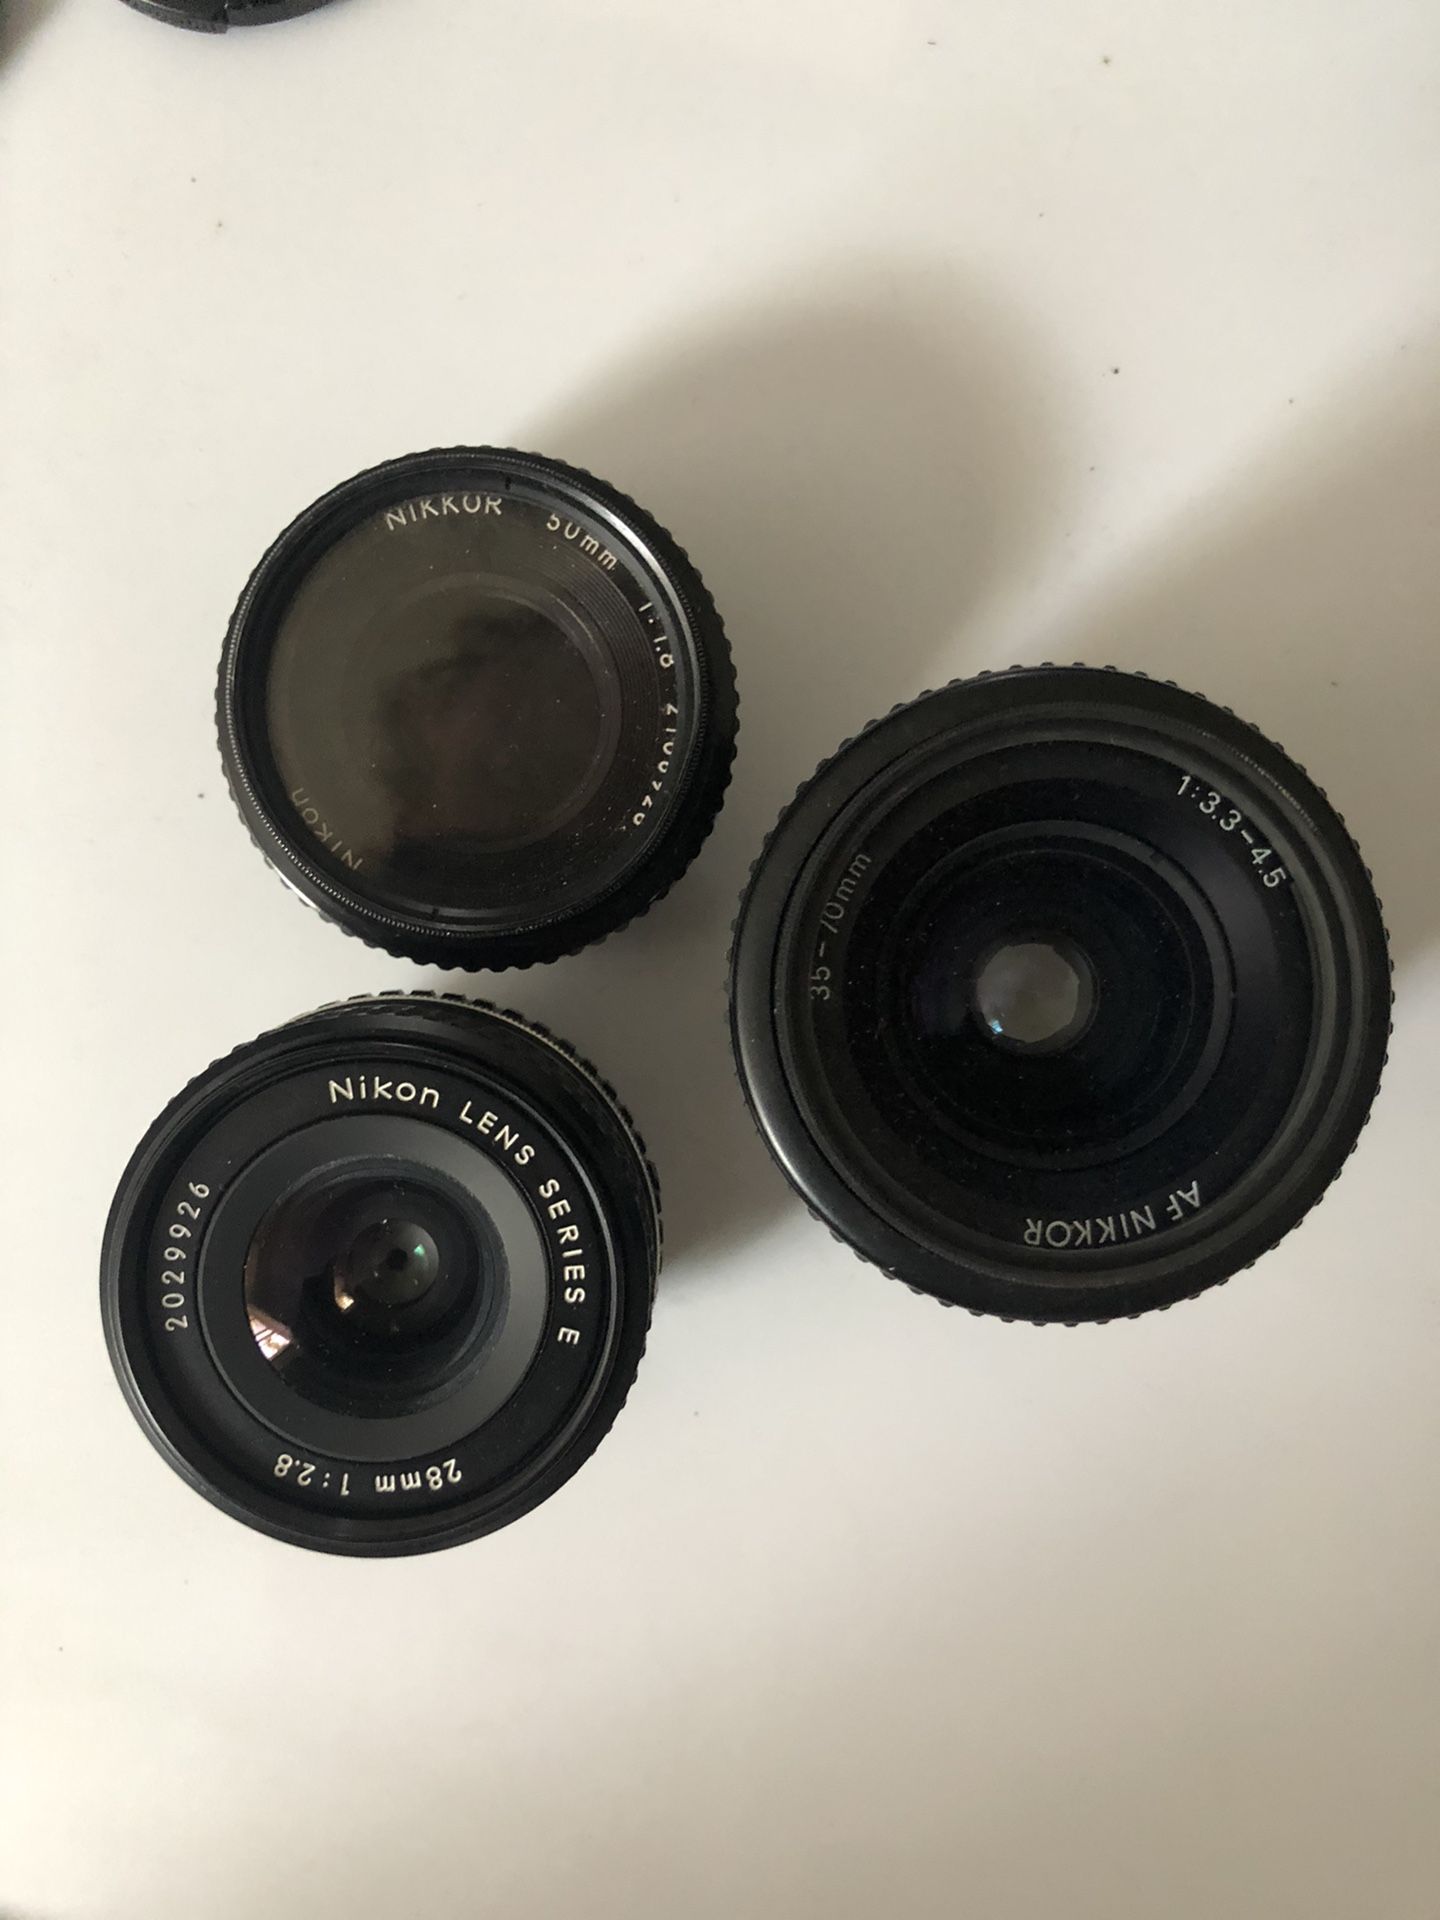 Nikon lenses